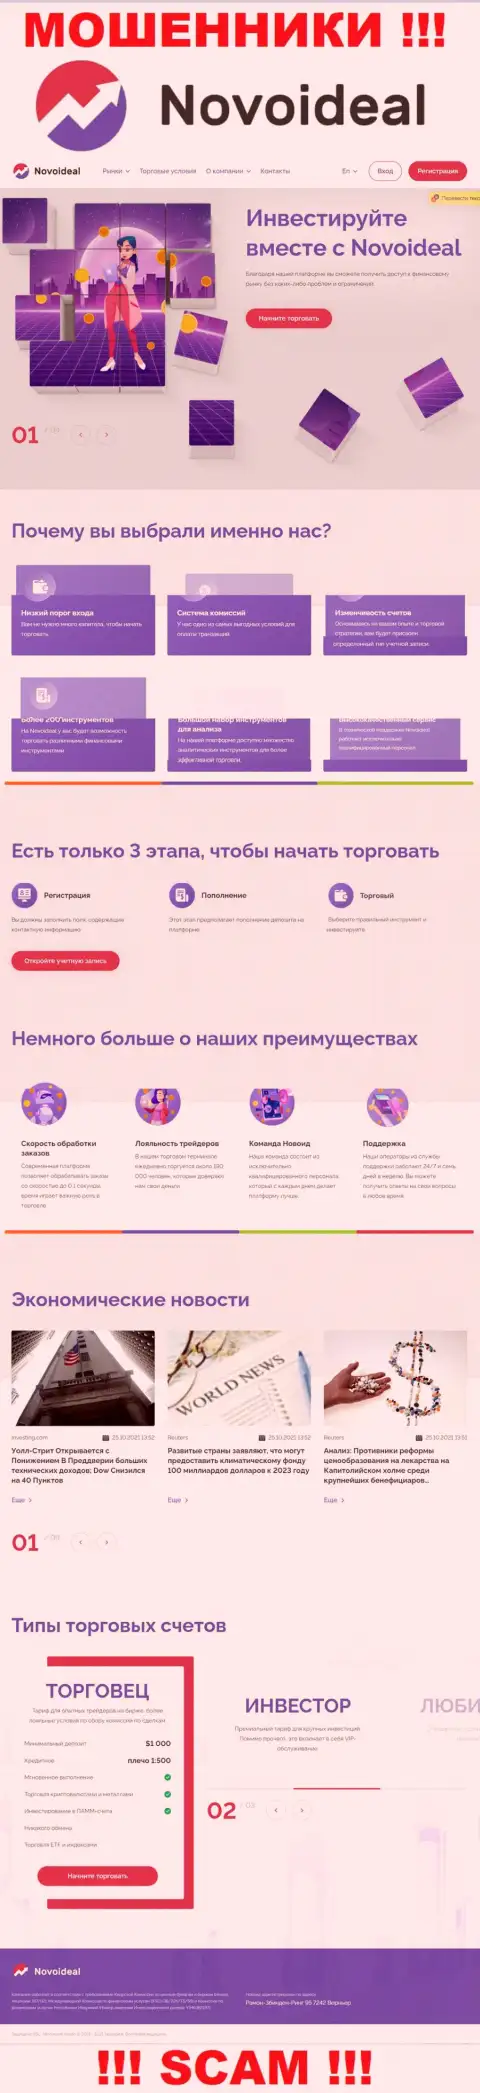 Официальный веб-портал НовоИдеал Ком - это красивая страница для привлечения жертв